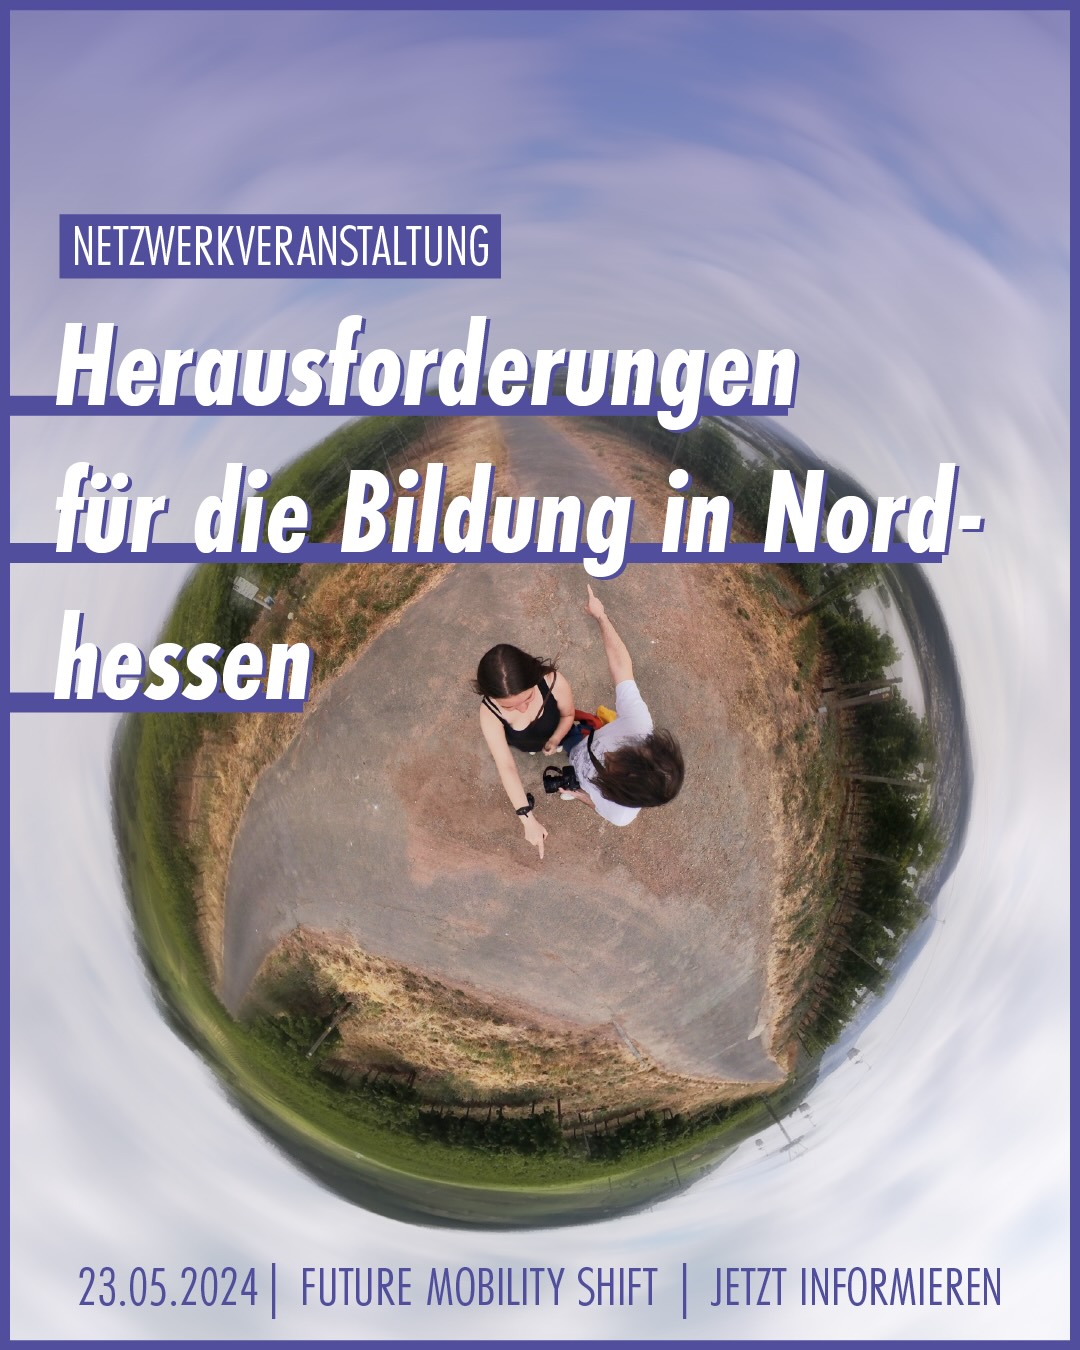 Veranstaltungsankündigung der Netzwerkveranstaltung "Herausforderungen für die Bildung in Nordhessen". Auf dem Bild sieht man zwei Personen, die mit dem Finger in unterschiedliche Richtungen einer Kreuzung zeigen.